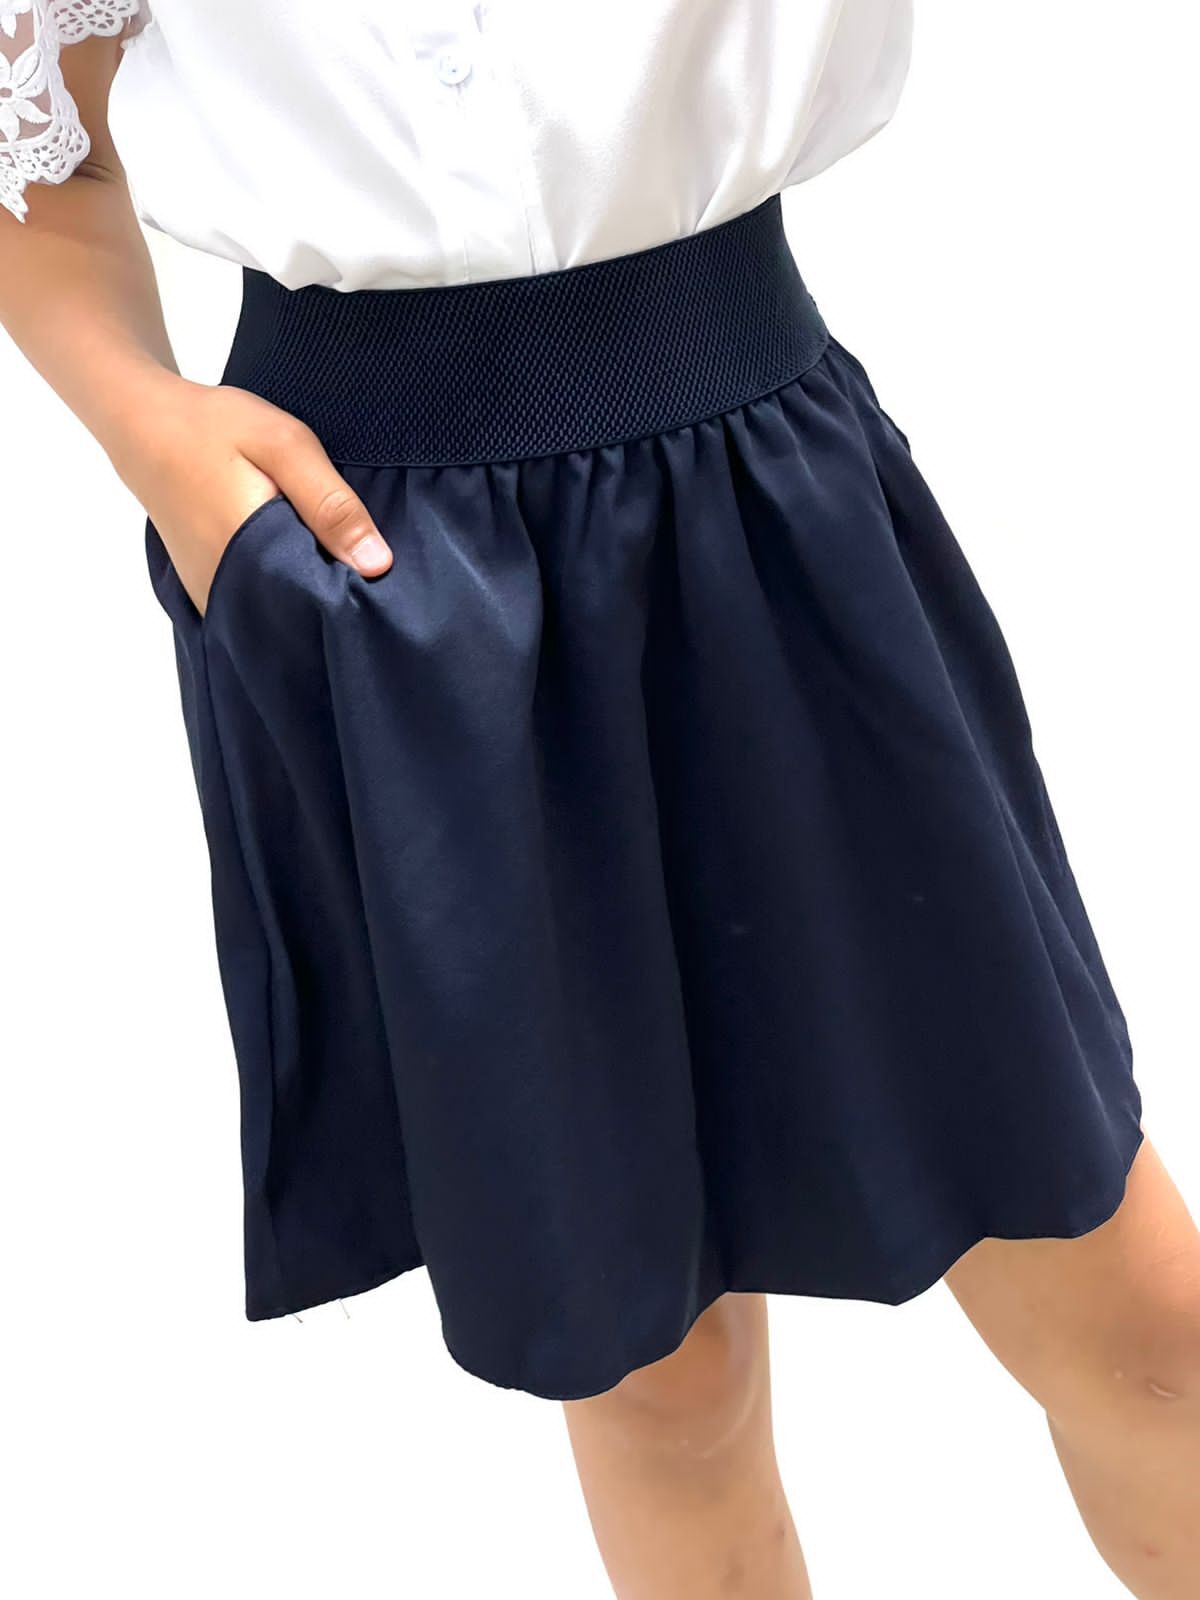 Синяя школьная юбка. Юбка Школьная. Школьная юбка для девочки. Школьная юбка на резинке. Школьная юбка синяя.